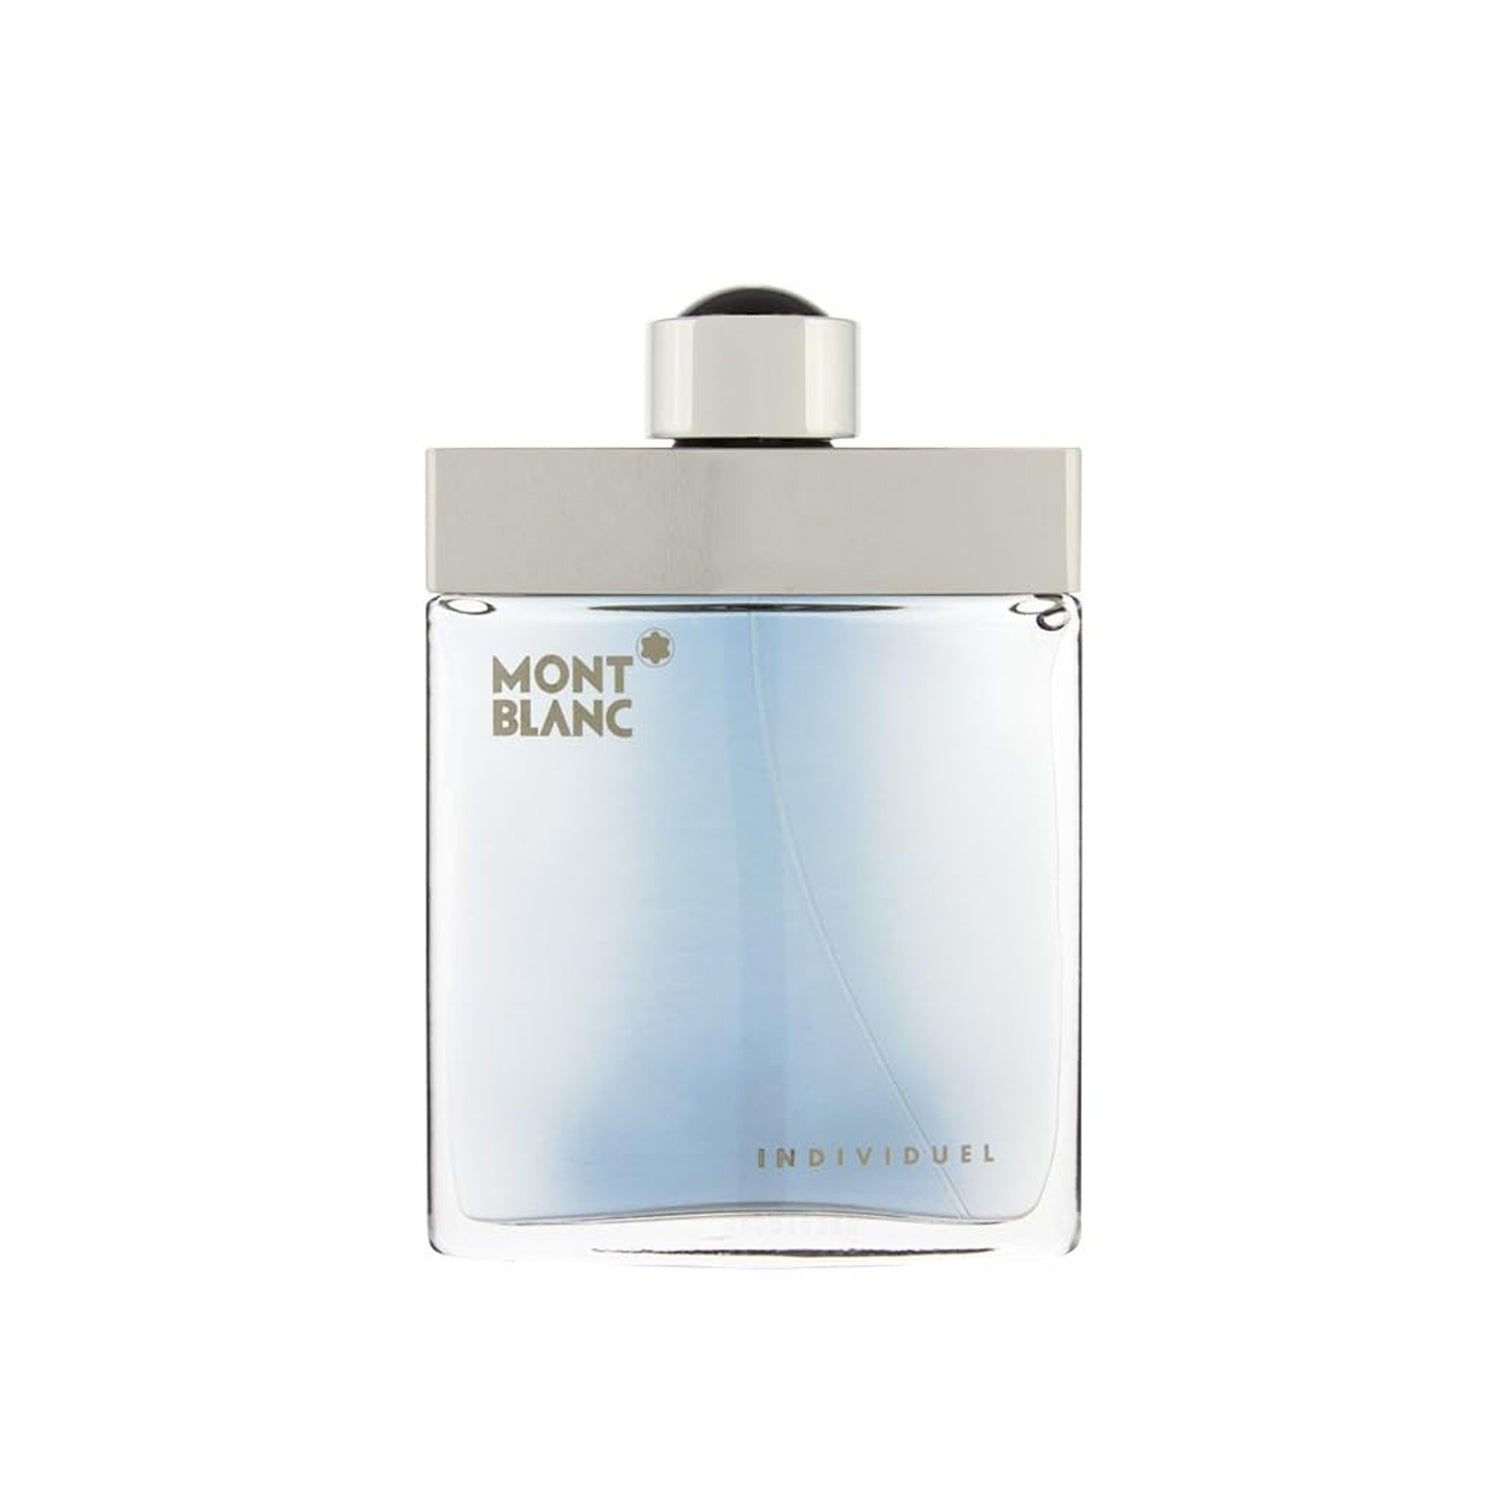 Mont Blanc Individuel 75 ml Eau de Toilette Spray for Men